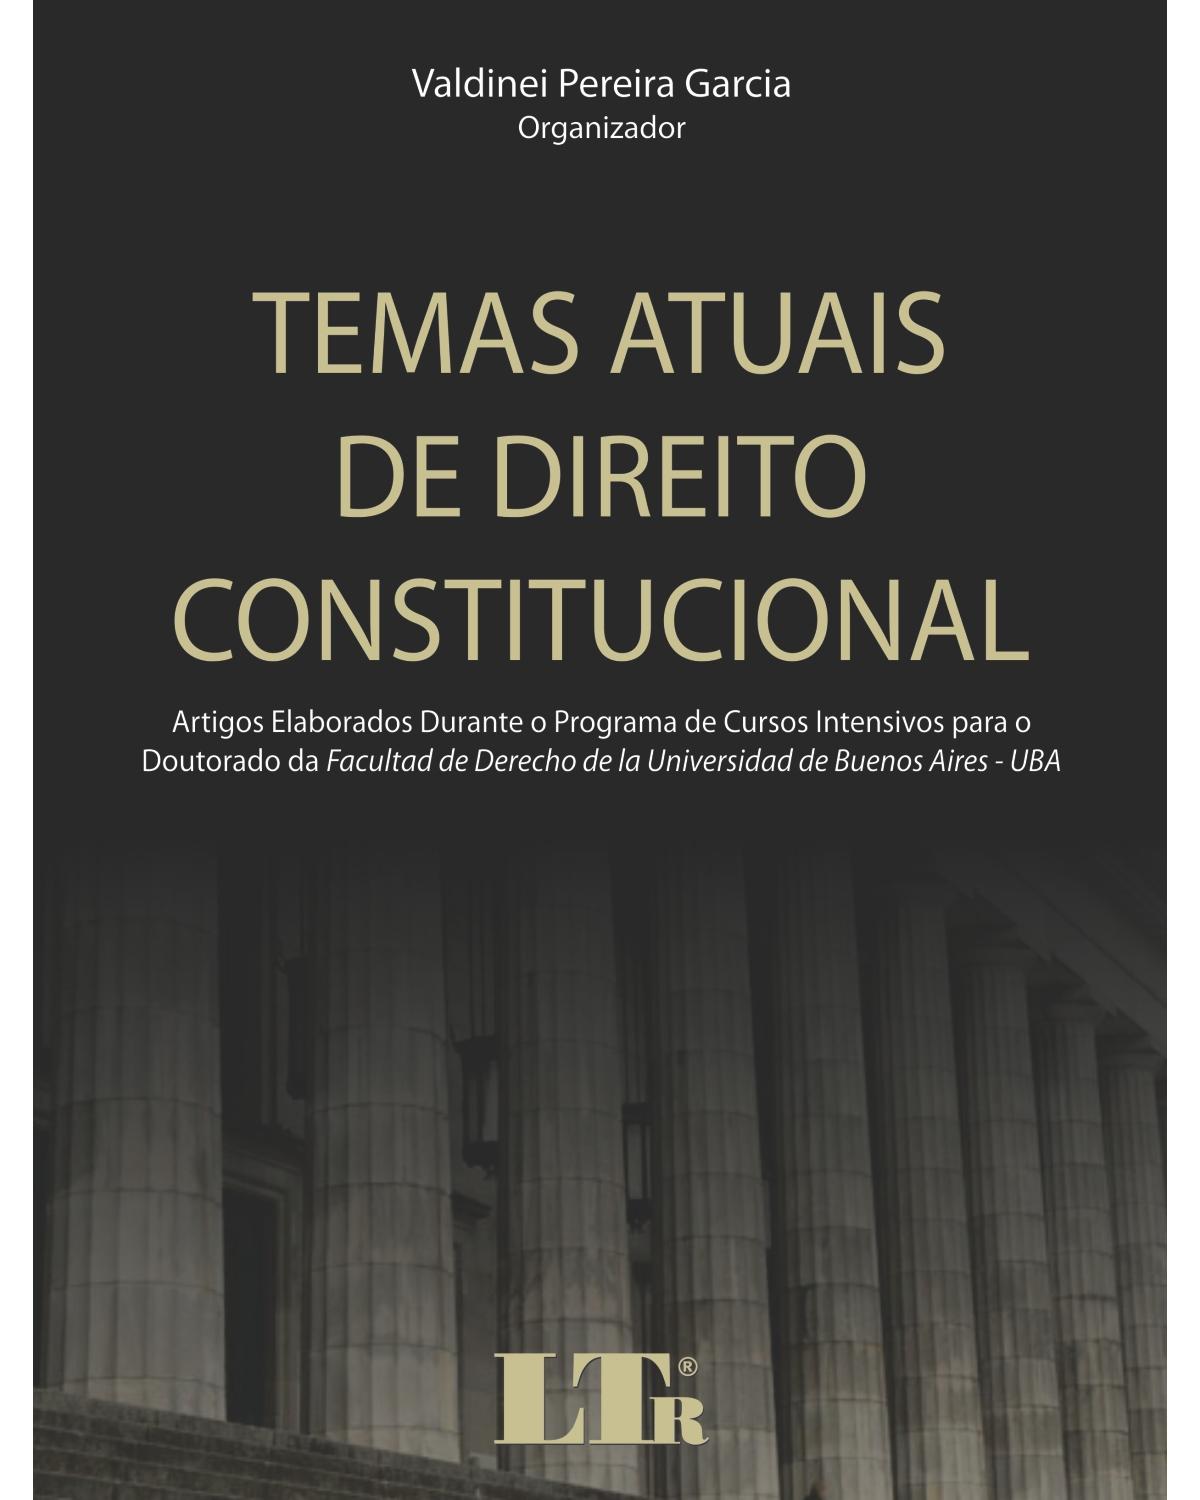 Temas atuais de direito constitucional: Artigos elaborados durante o programa de cursos intensivos para o doutorado da Facultad de Derecho de la Universidad de Buenos Aires-UBA - 1ª Edição